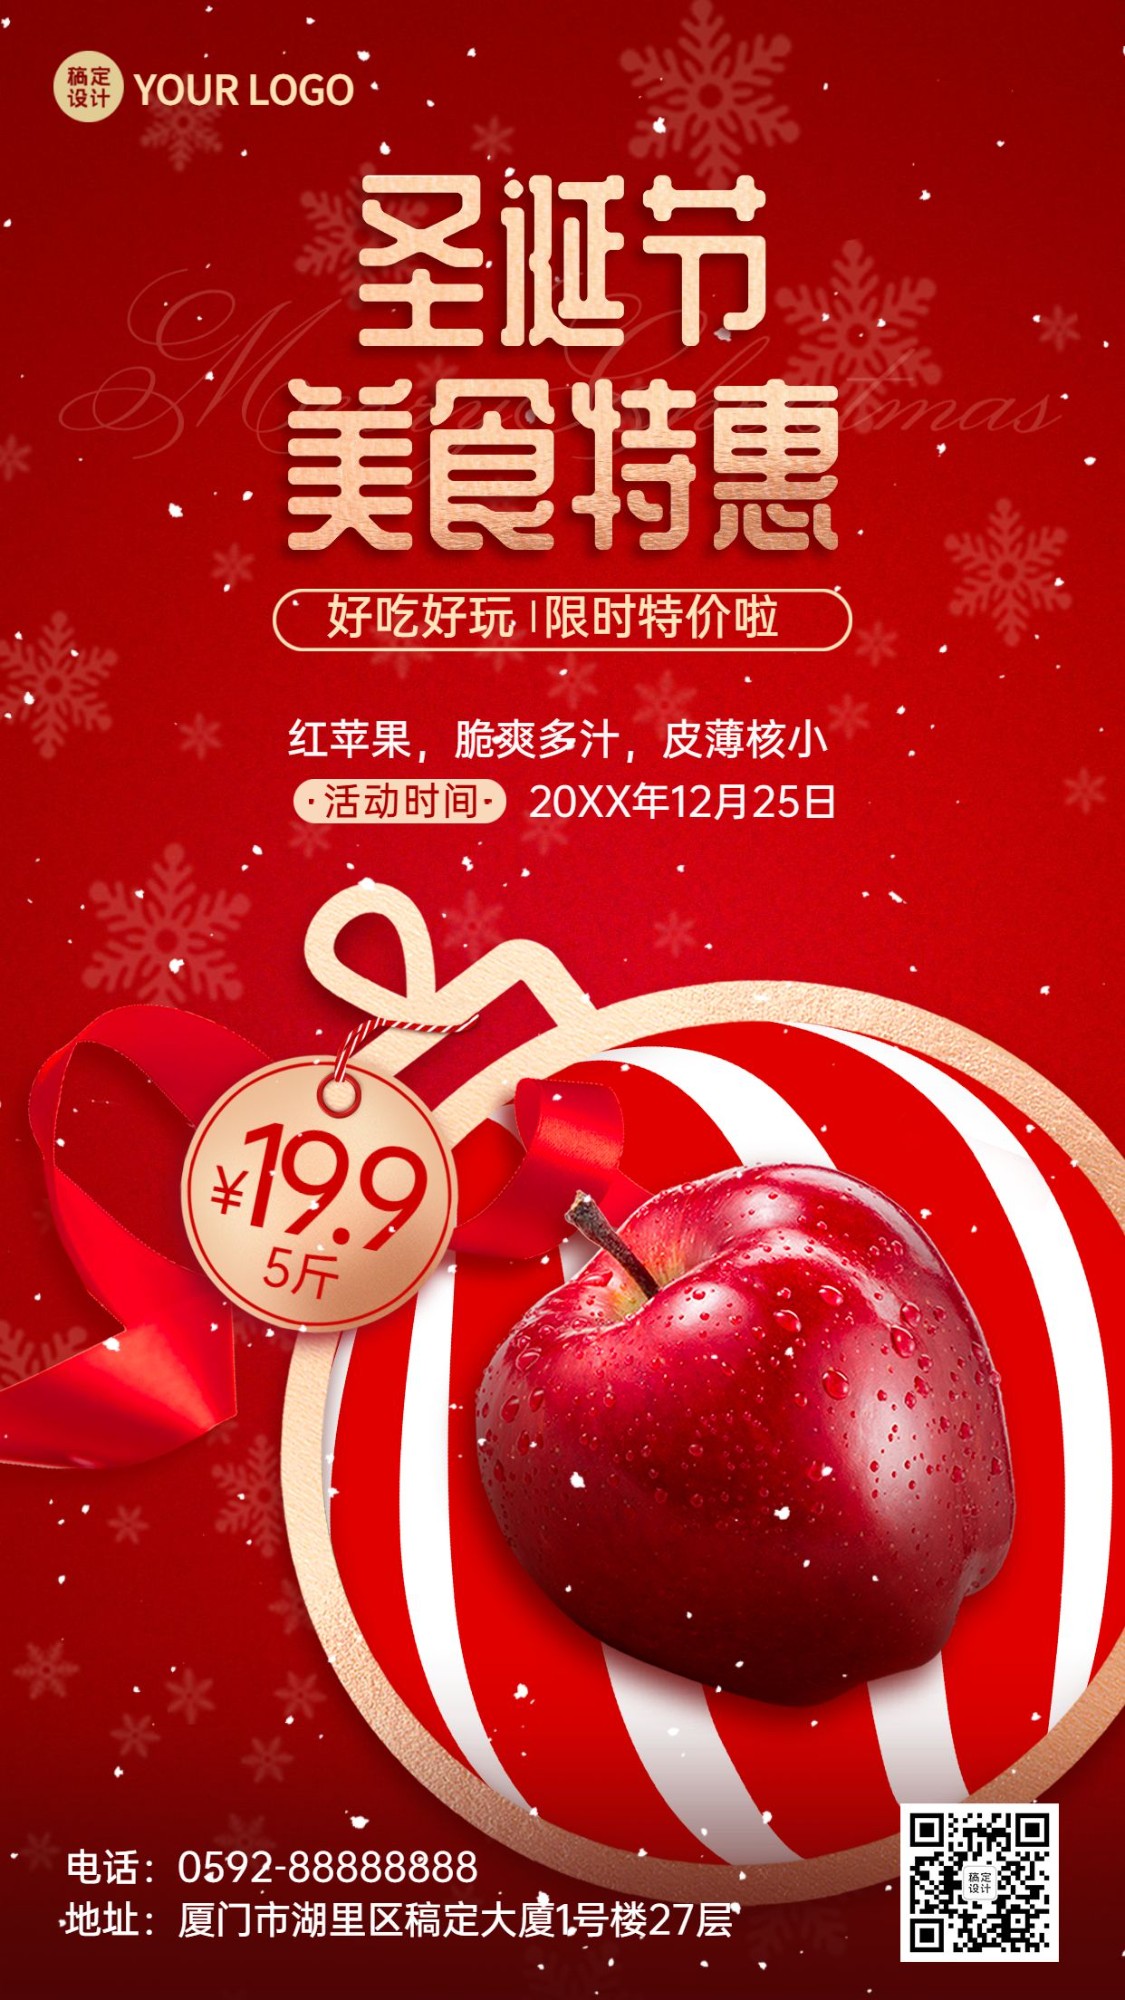 圣诞节平安夜苹果产品展示促销手机海报